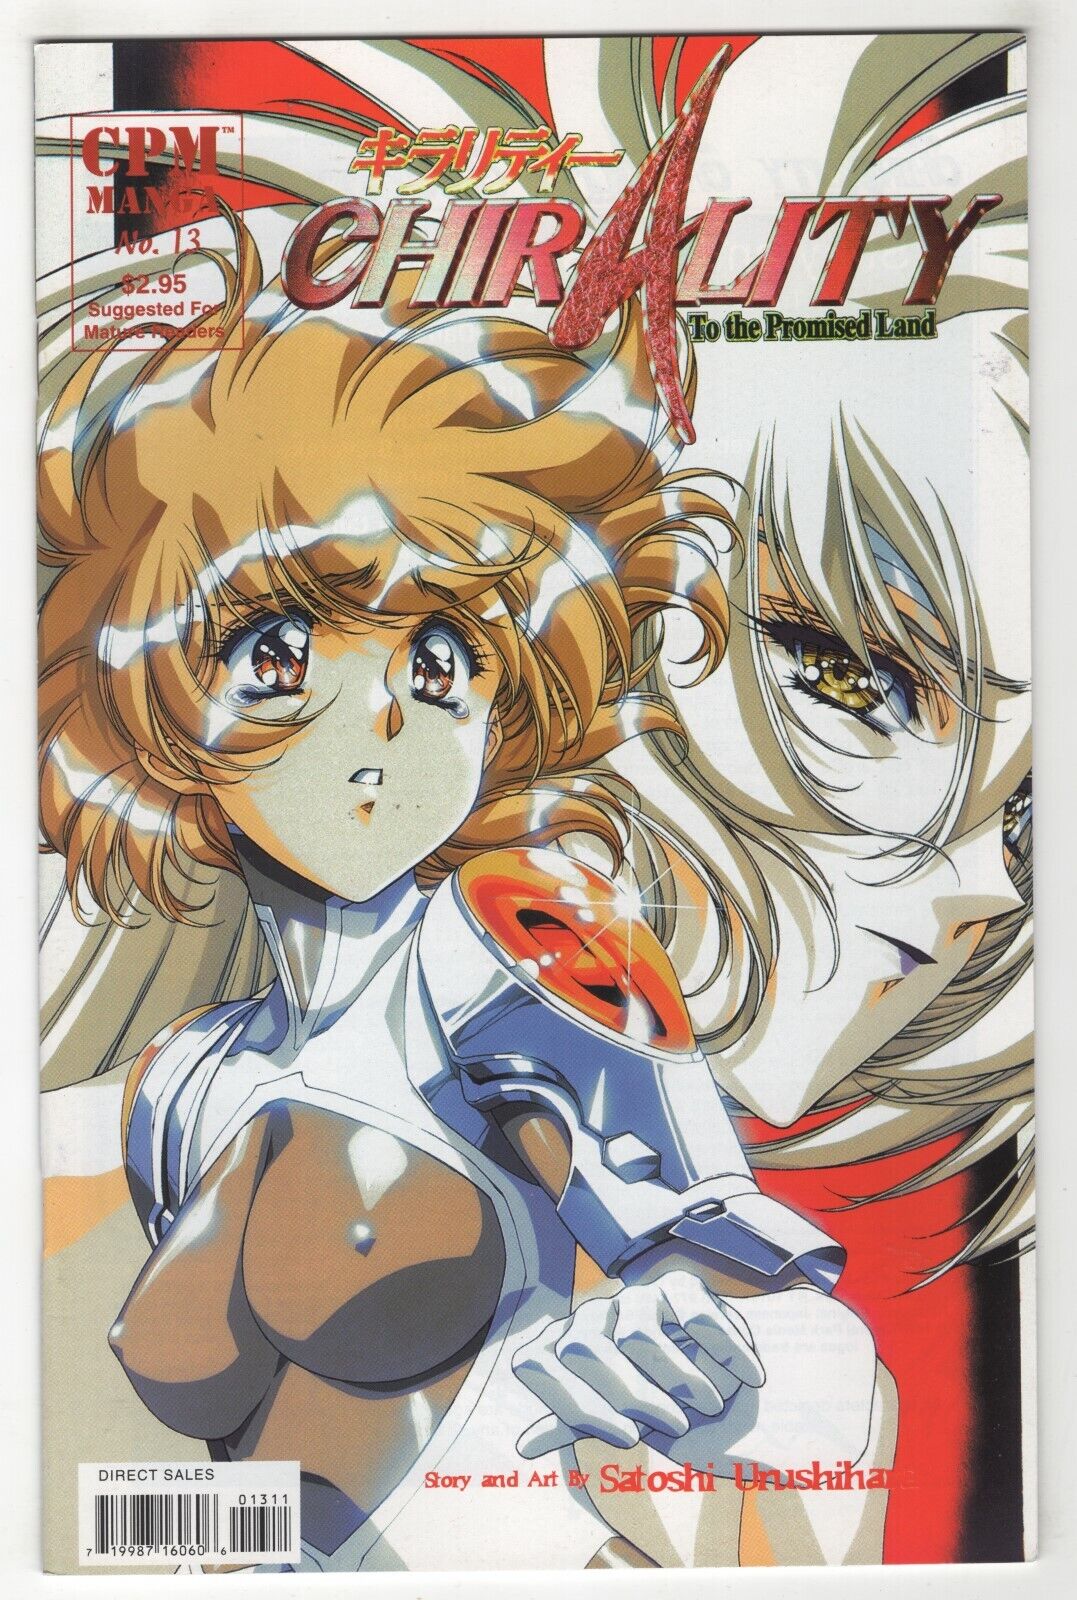 Chirality: To the Promised Land #13 (Mar 1998, CPM Manga) Urushihara w